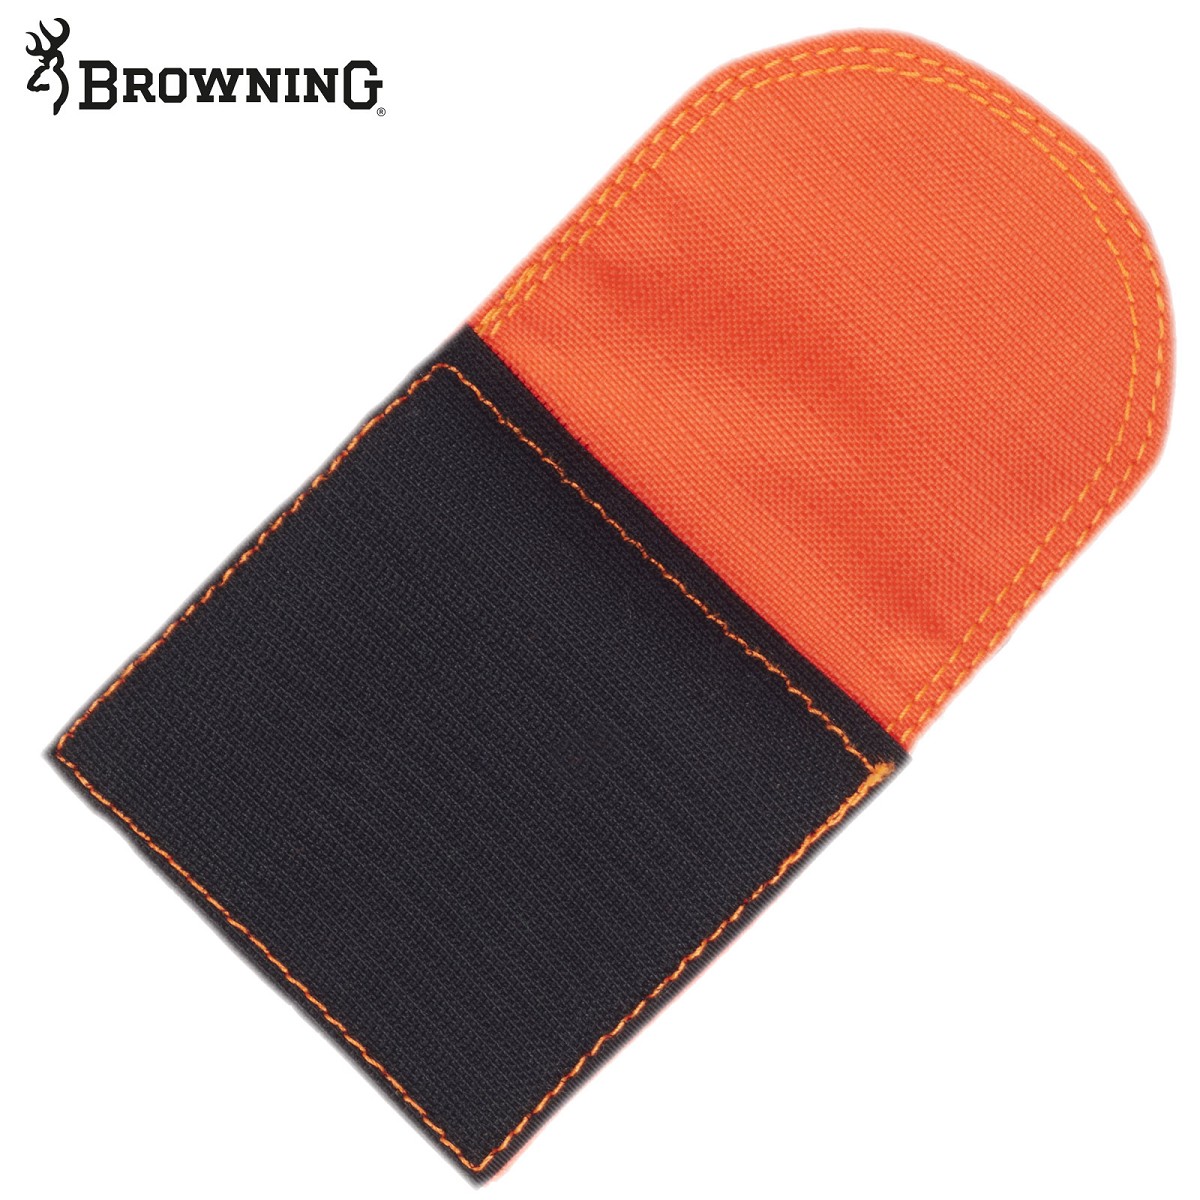 BROWNING Halserweiterung von Browning